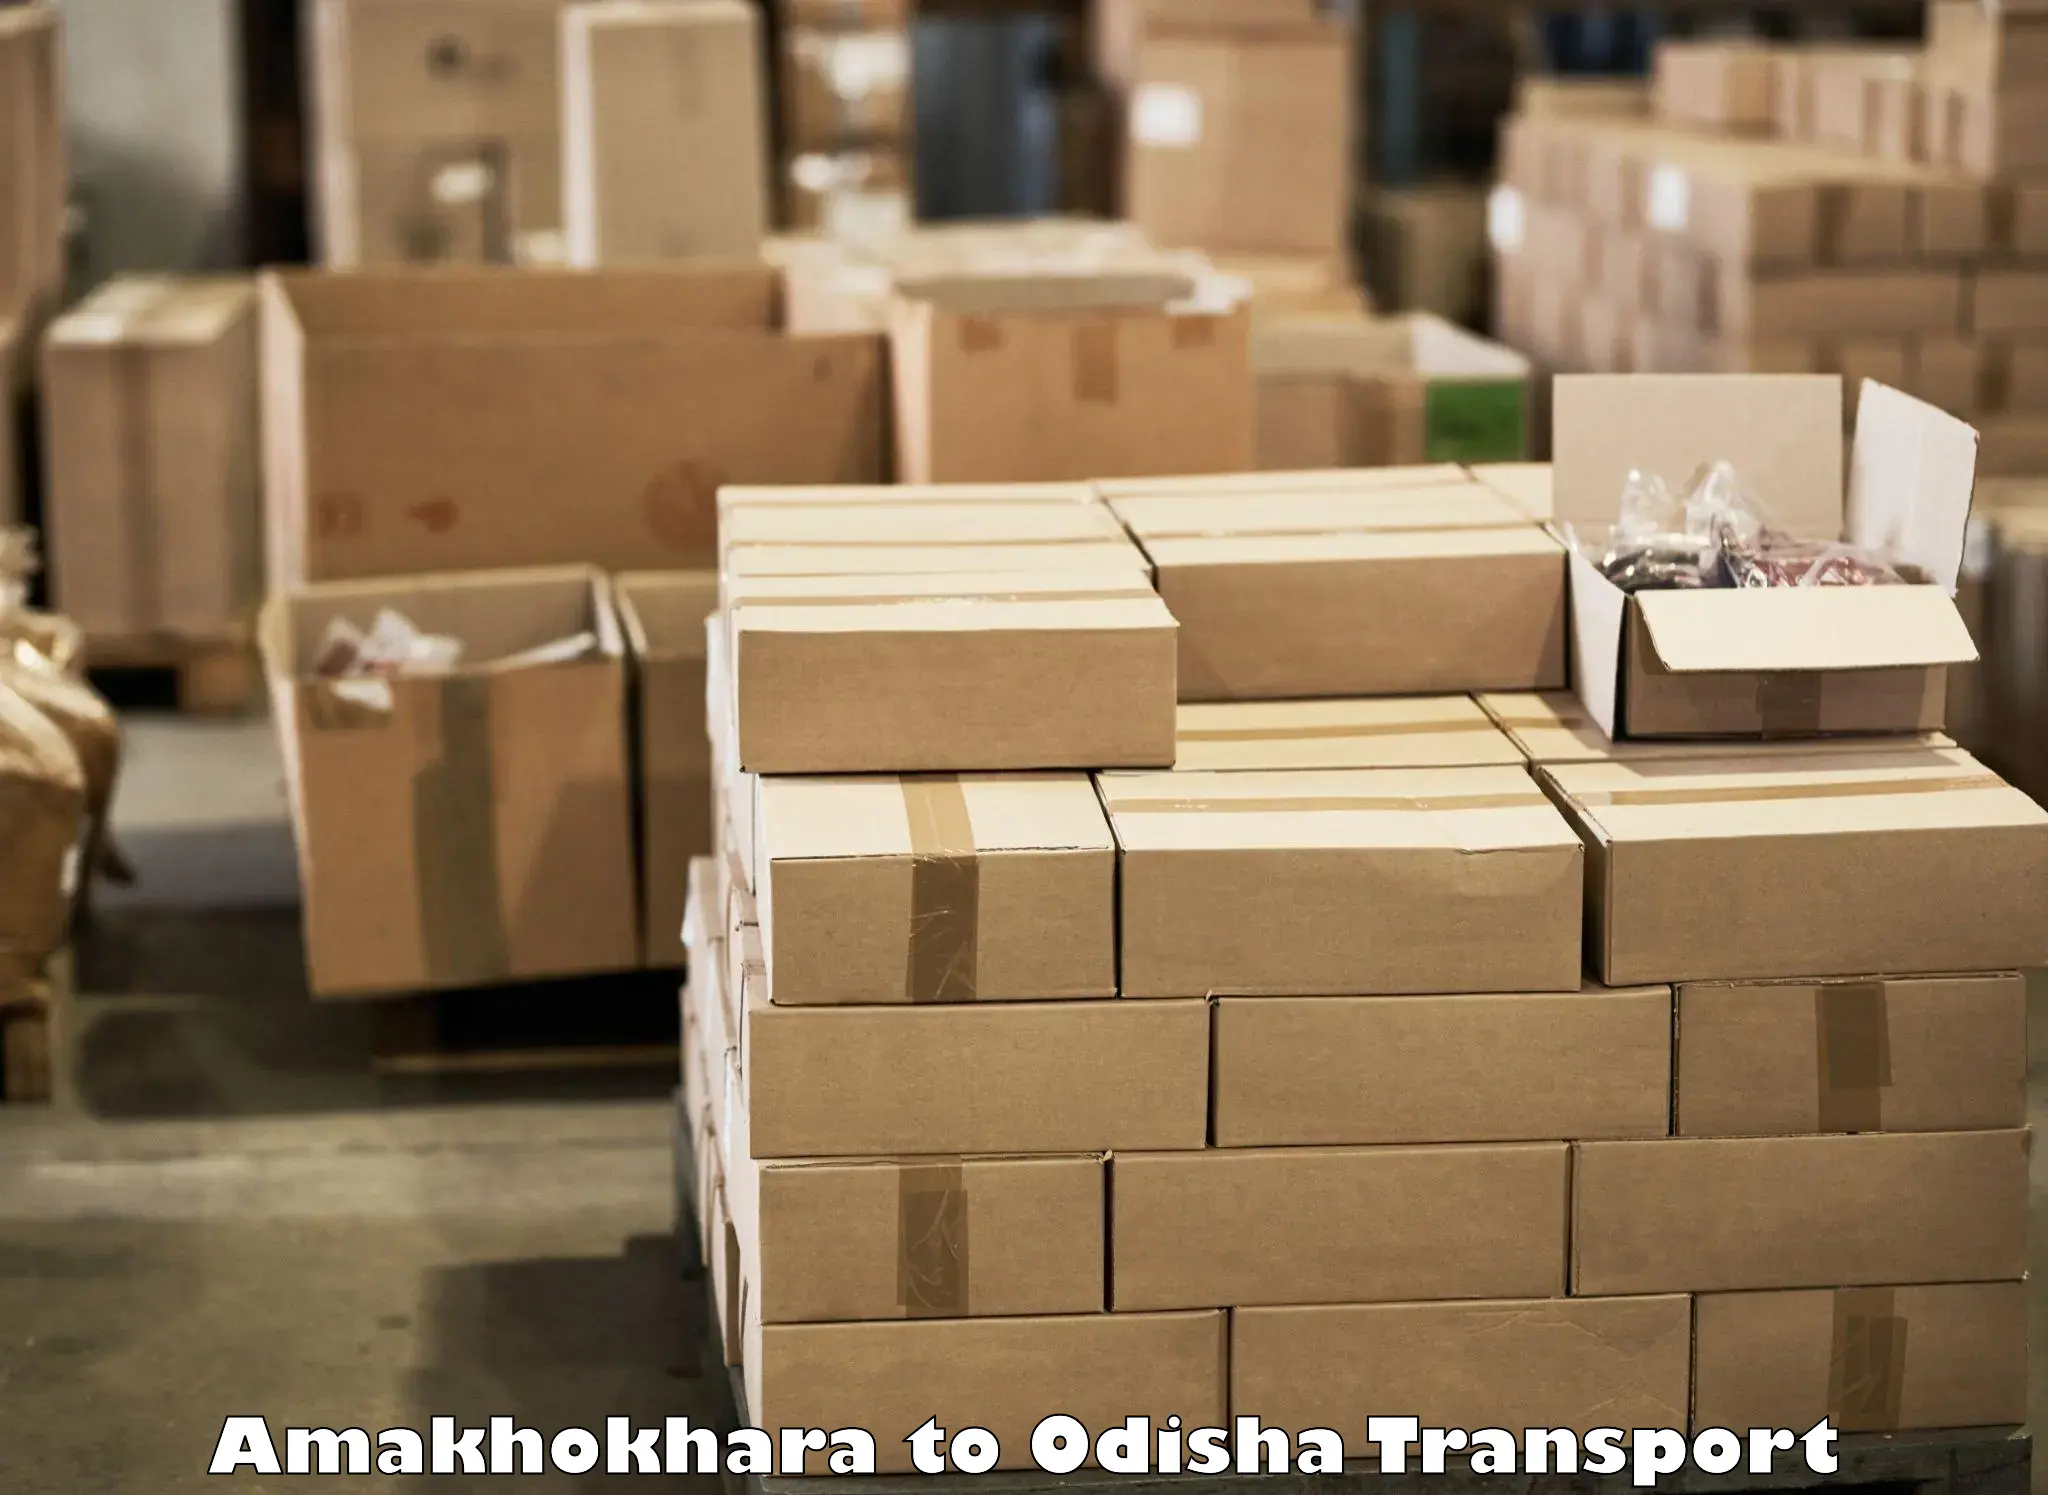 Cargo transportation services Amakhokhara to Agarpada